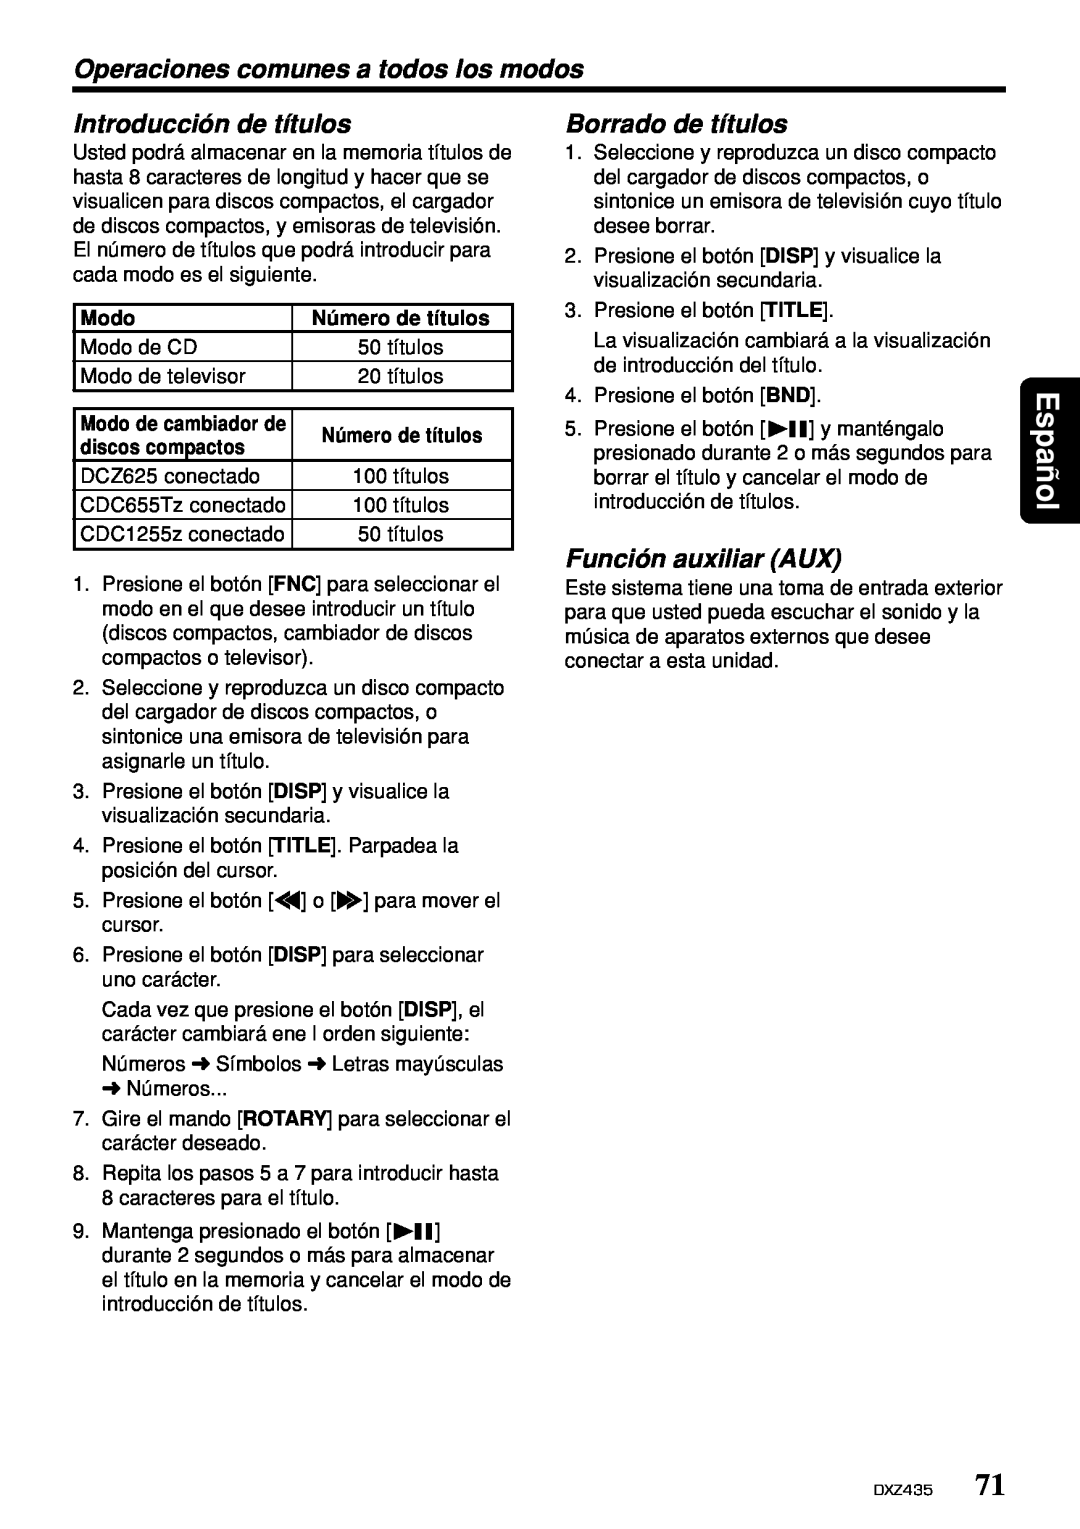 Clarion DXZ435 owner manual Introducción de títulos, Borrado de títulos, Función auxiliar AUX, Español 